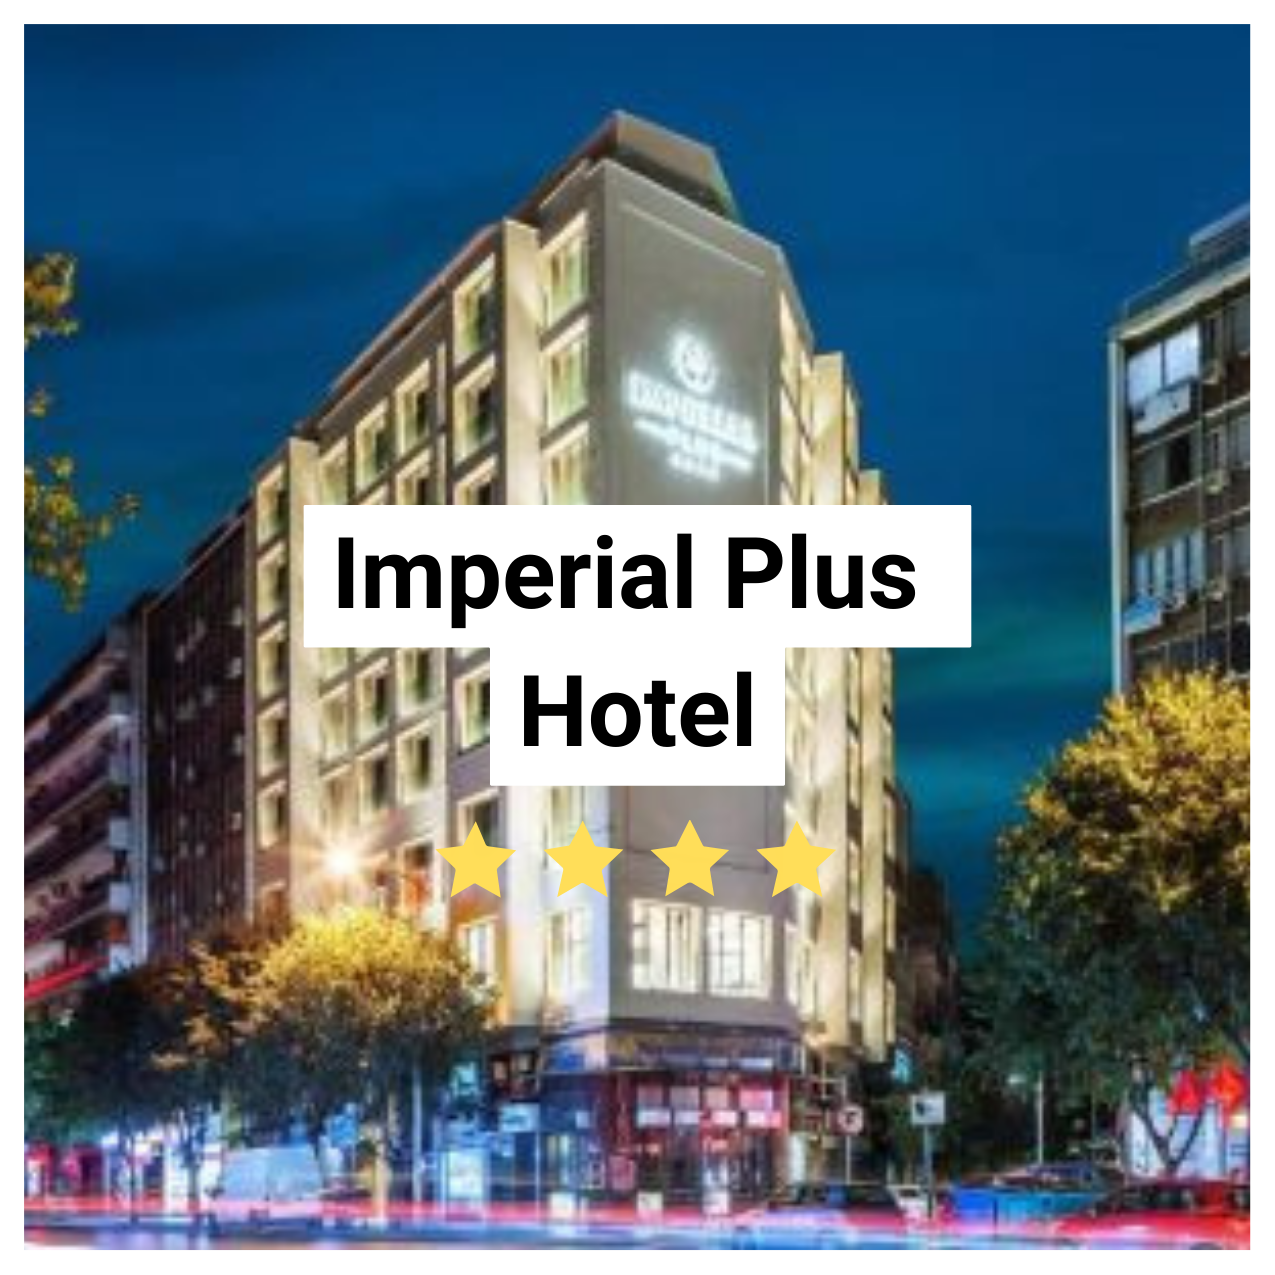 Imperial Plus Hotel Image.